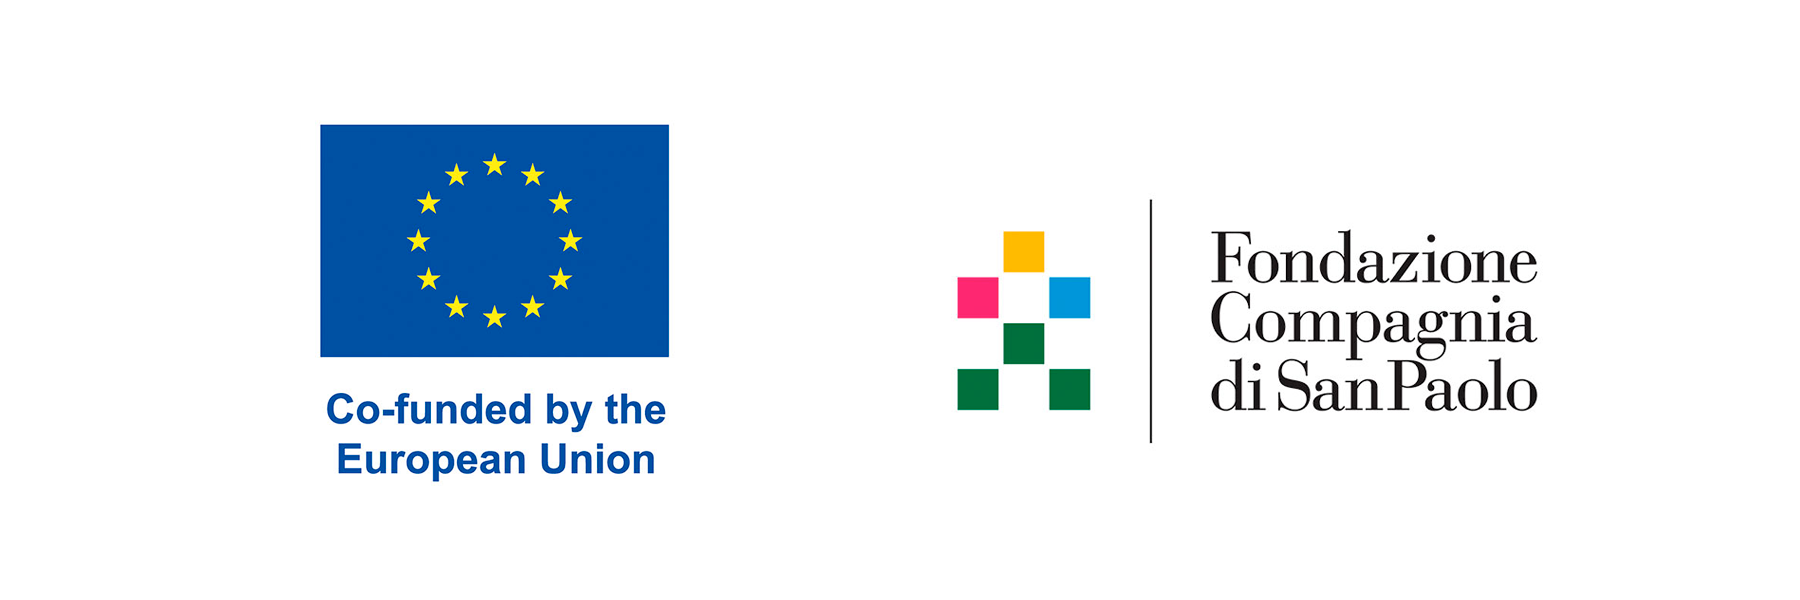 EU logo and Fondazione Compagnia di San Paolo logo